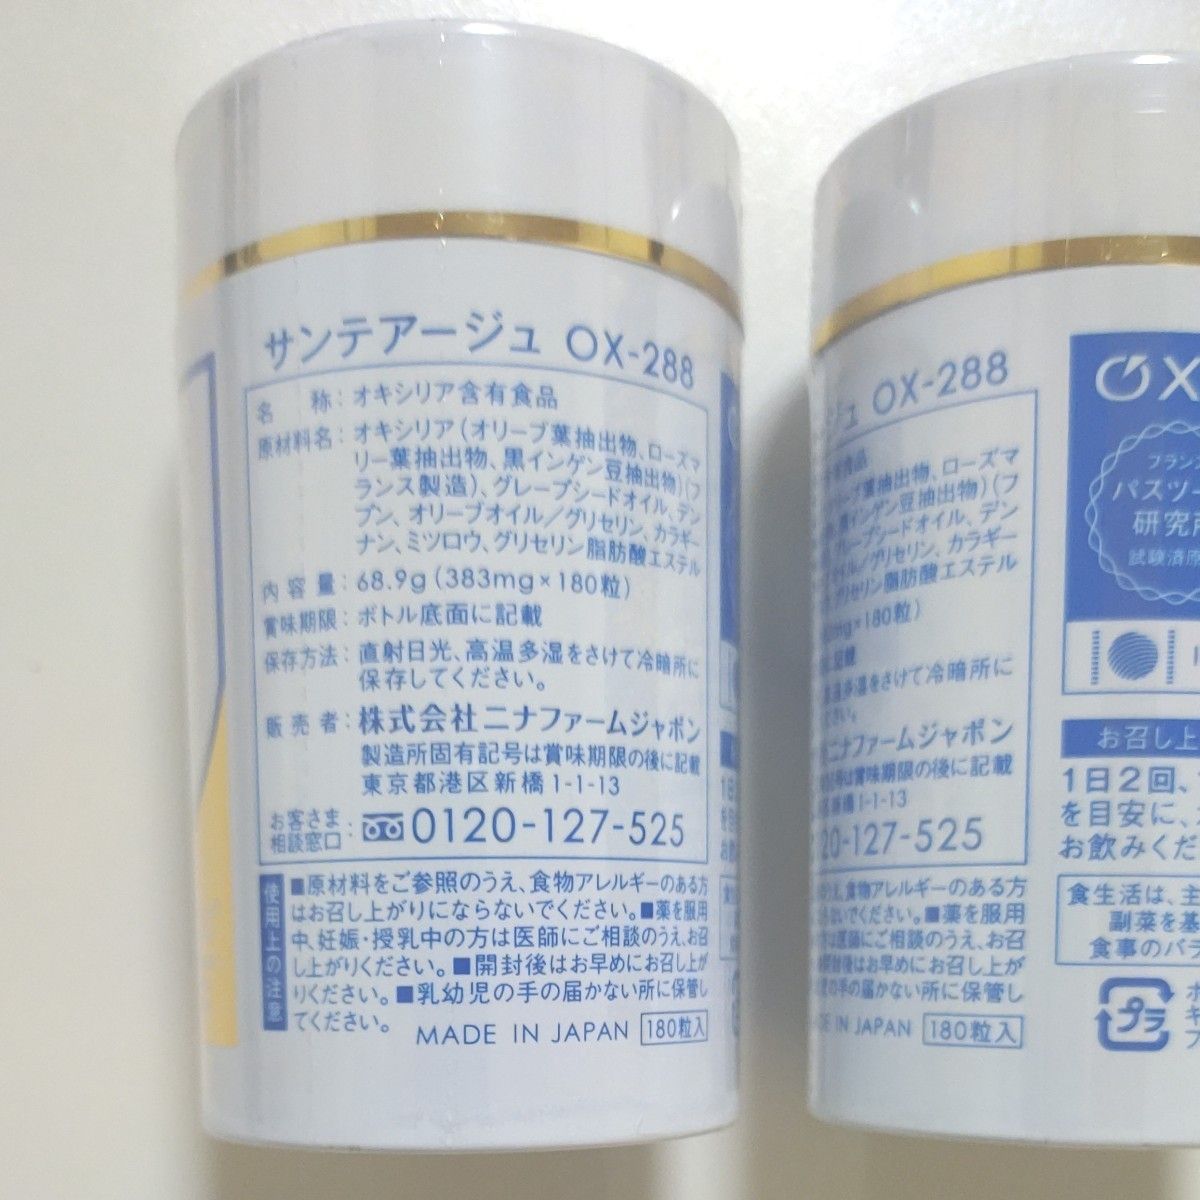 サンテアージュ OX-288   　商品内容　サプリメント、オキシリア含有食品　商品状態　新品、未開封　本数　2本